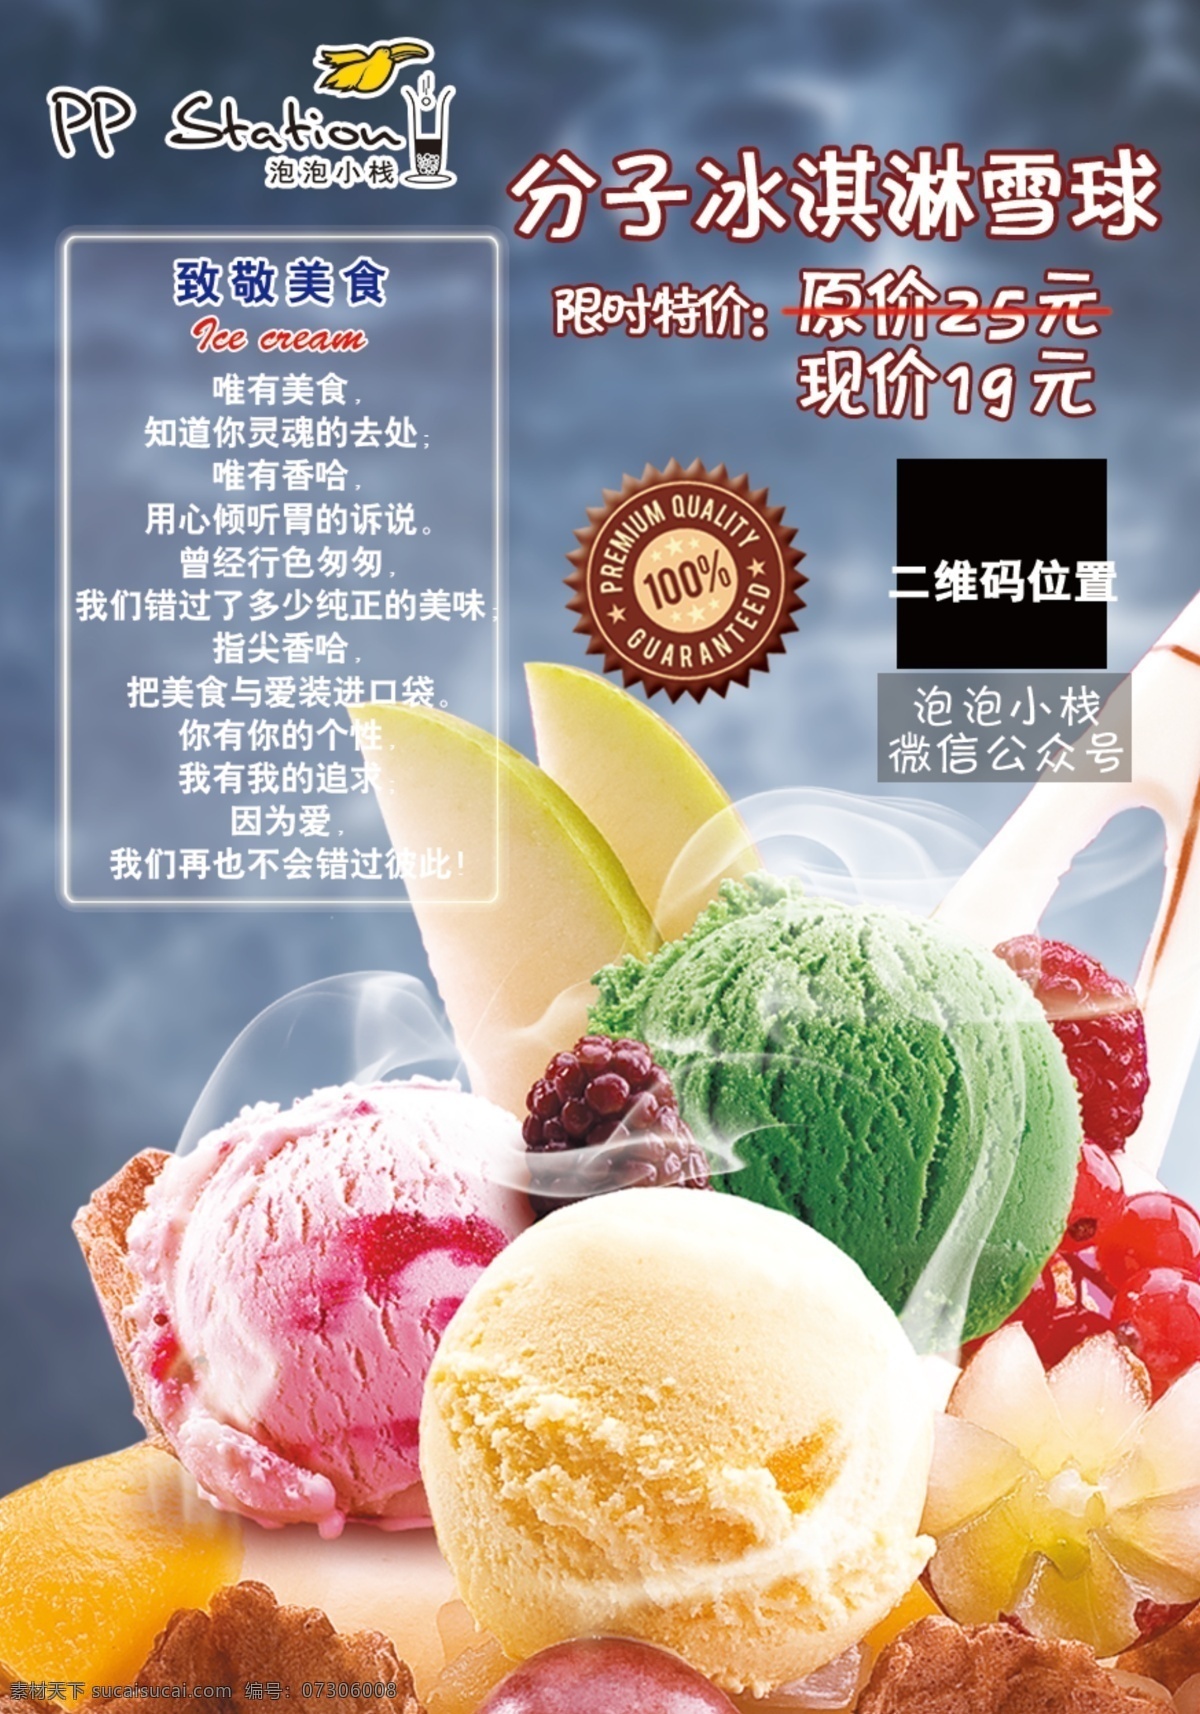 分子 冰淇淋 推荐 推荐卡 海报 宣传 活动 产品介绍